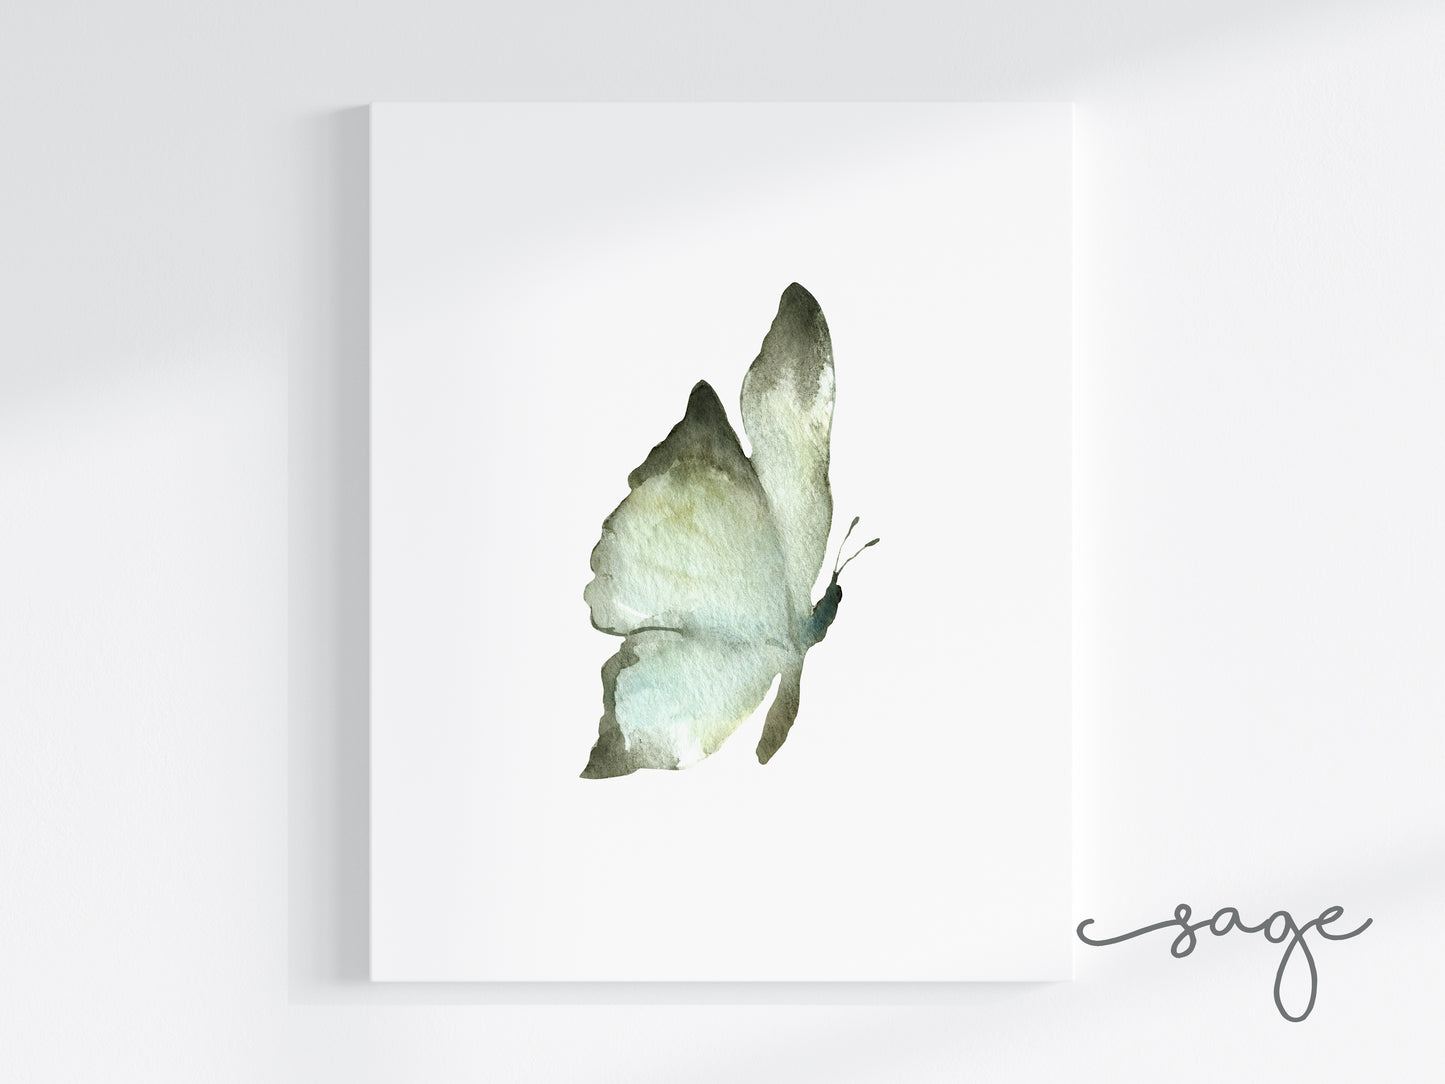 Butterflies Art Prints